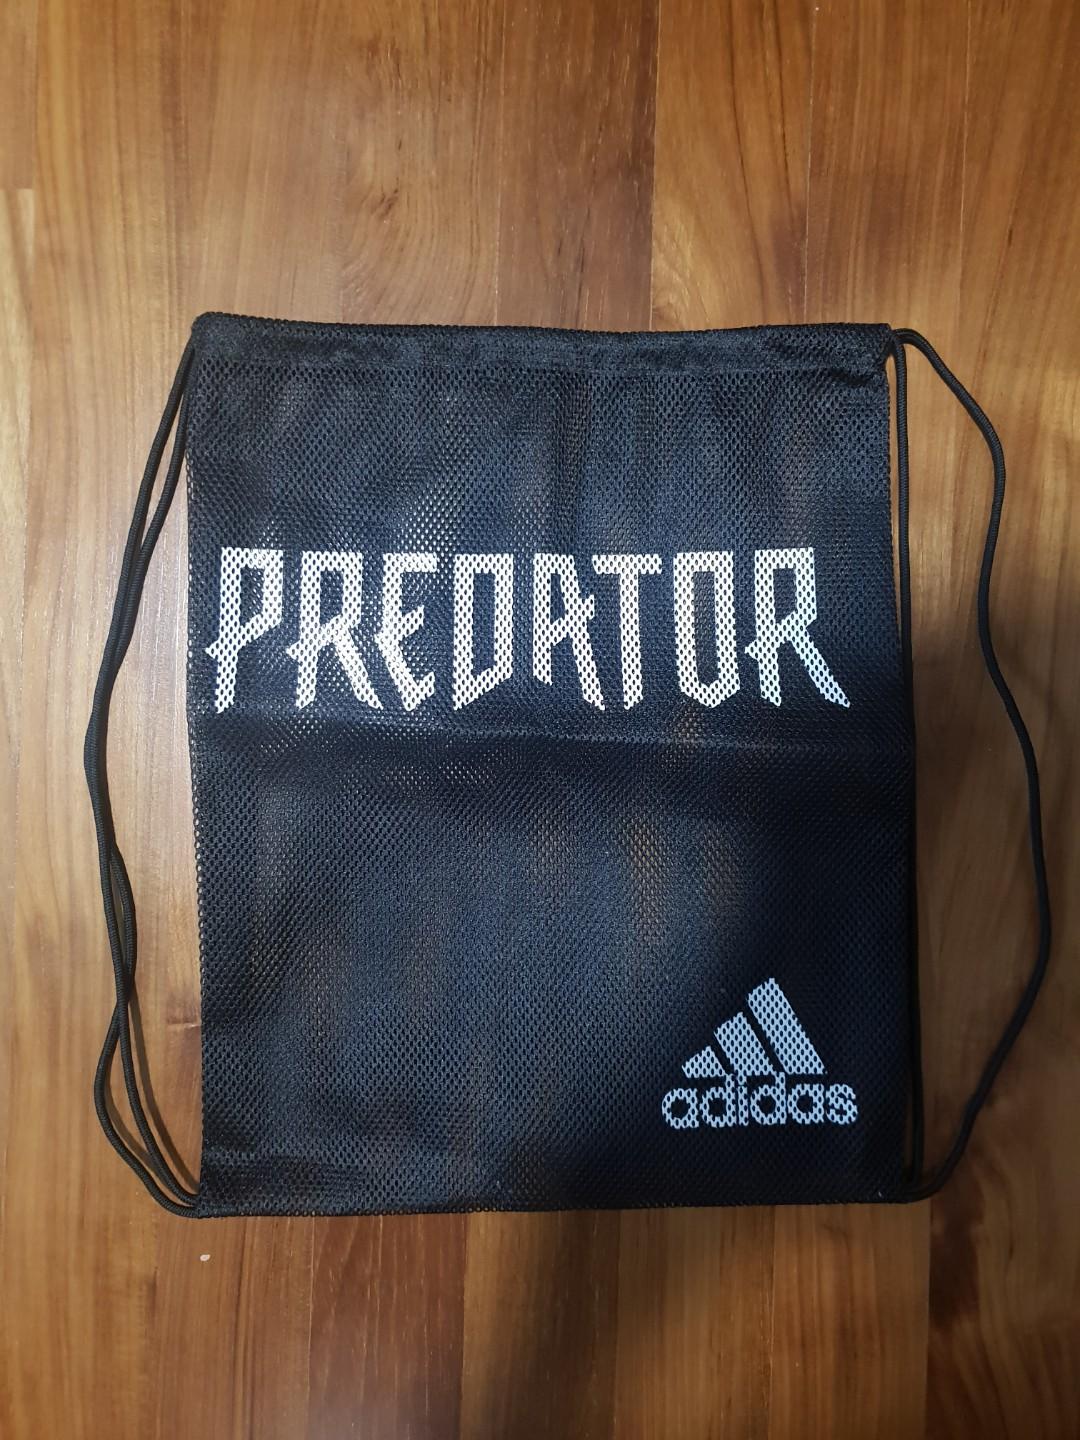 adidas predator boot bag